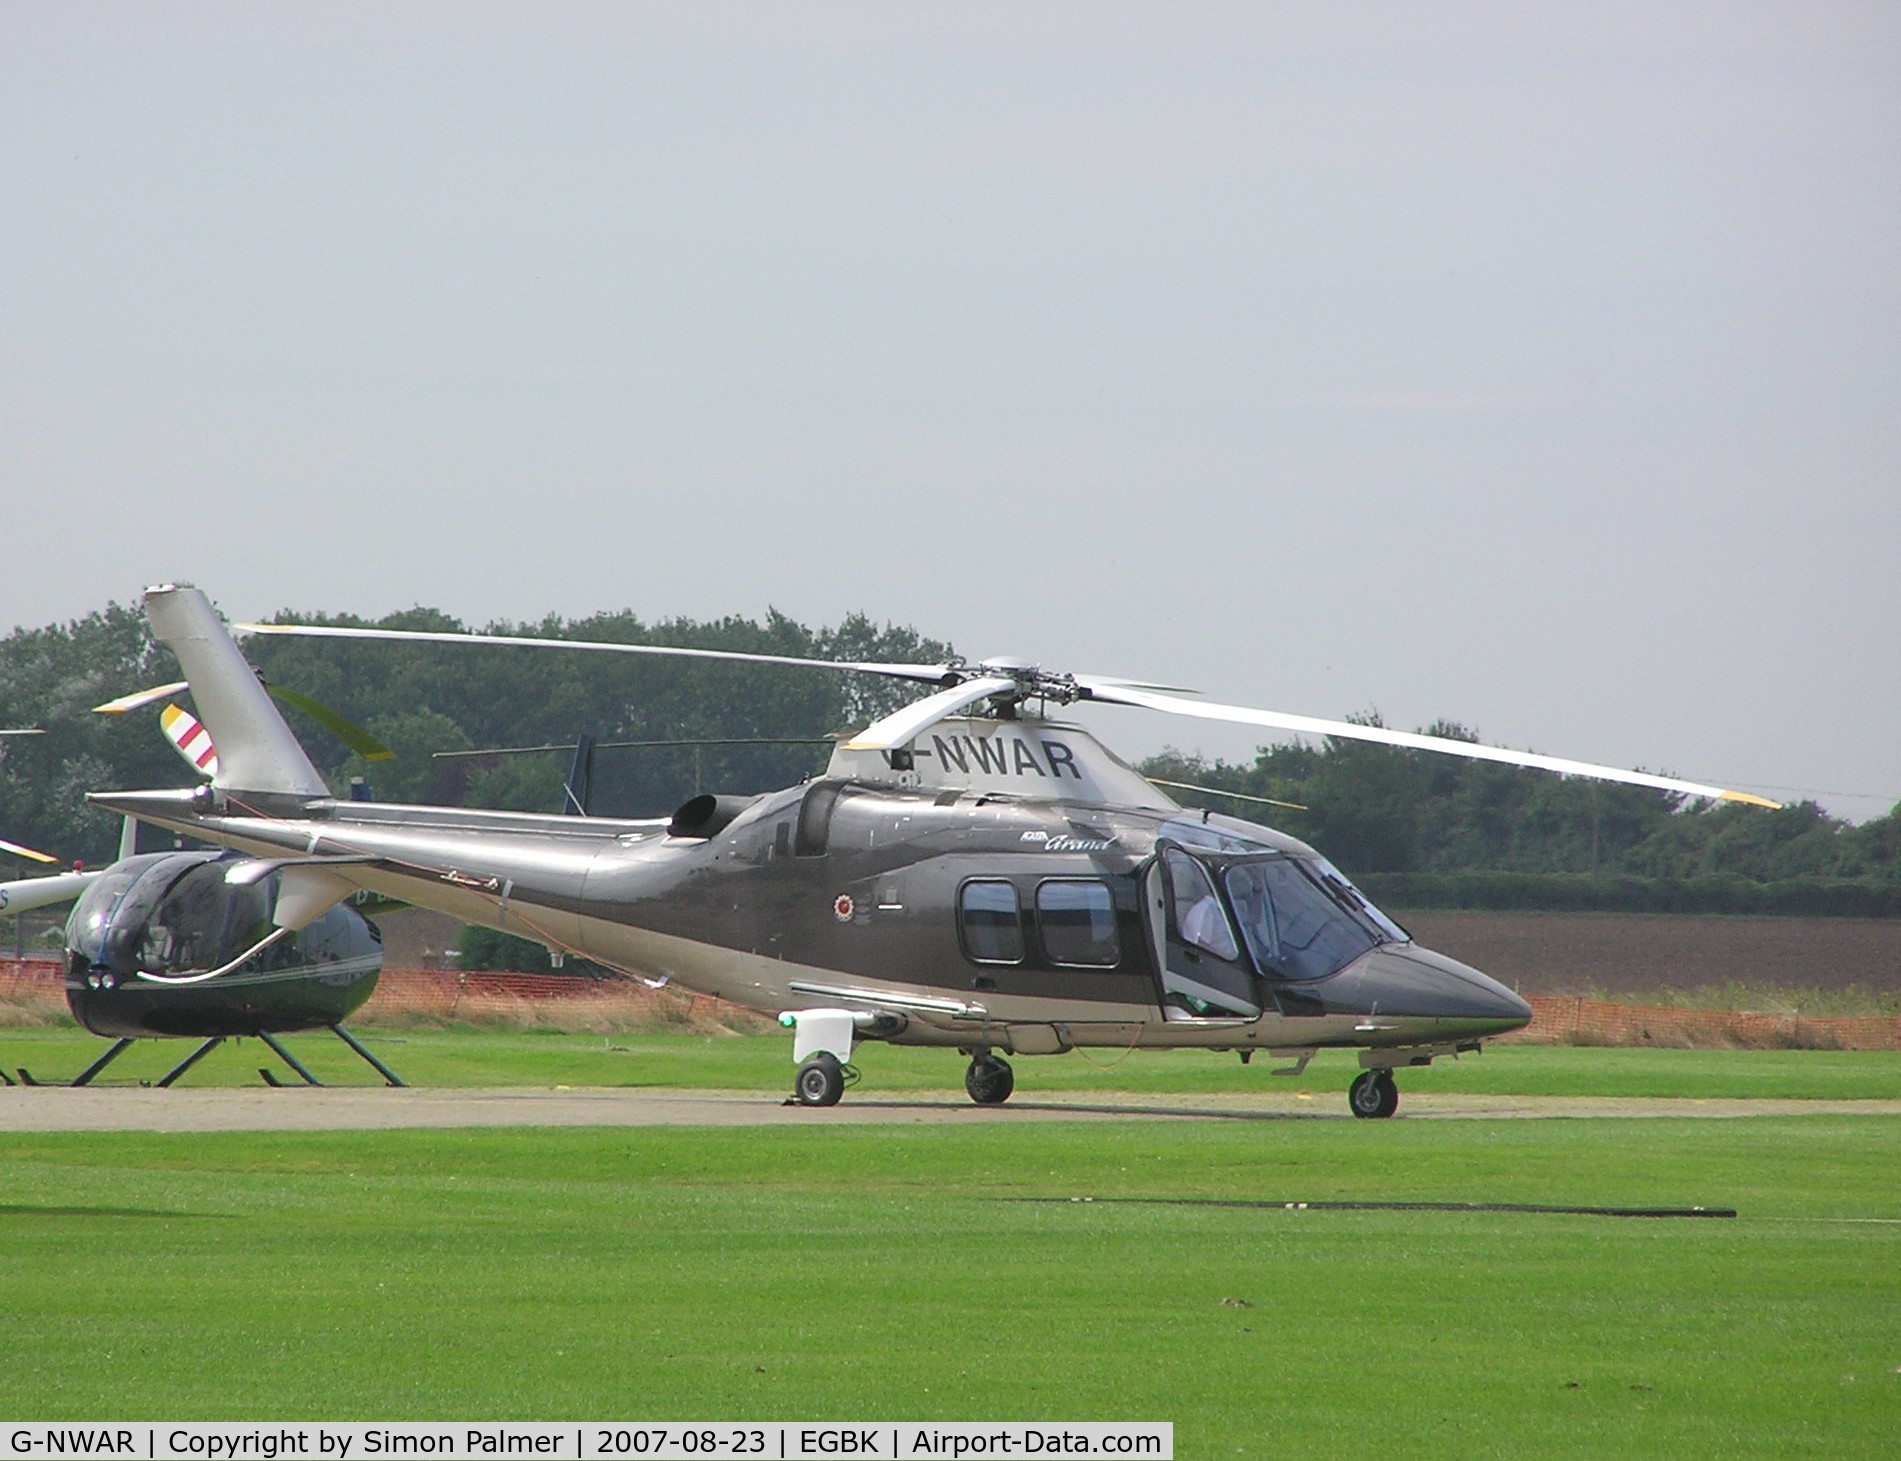 G-NWAR, 2006 Agusta A-109S Grand C/N 22019, A109 at Sywell